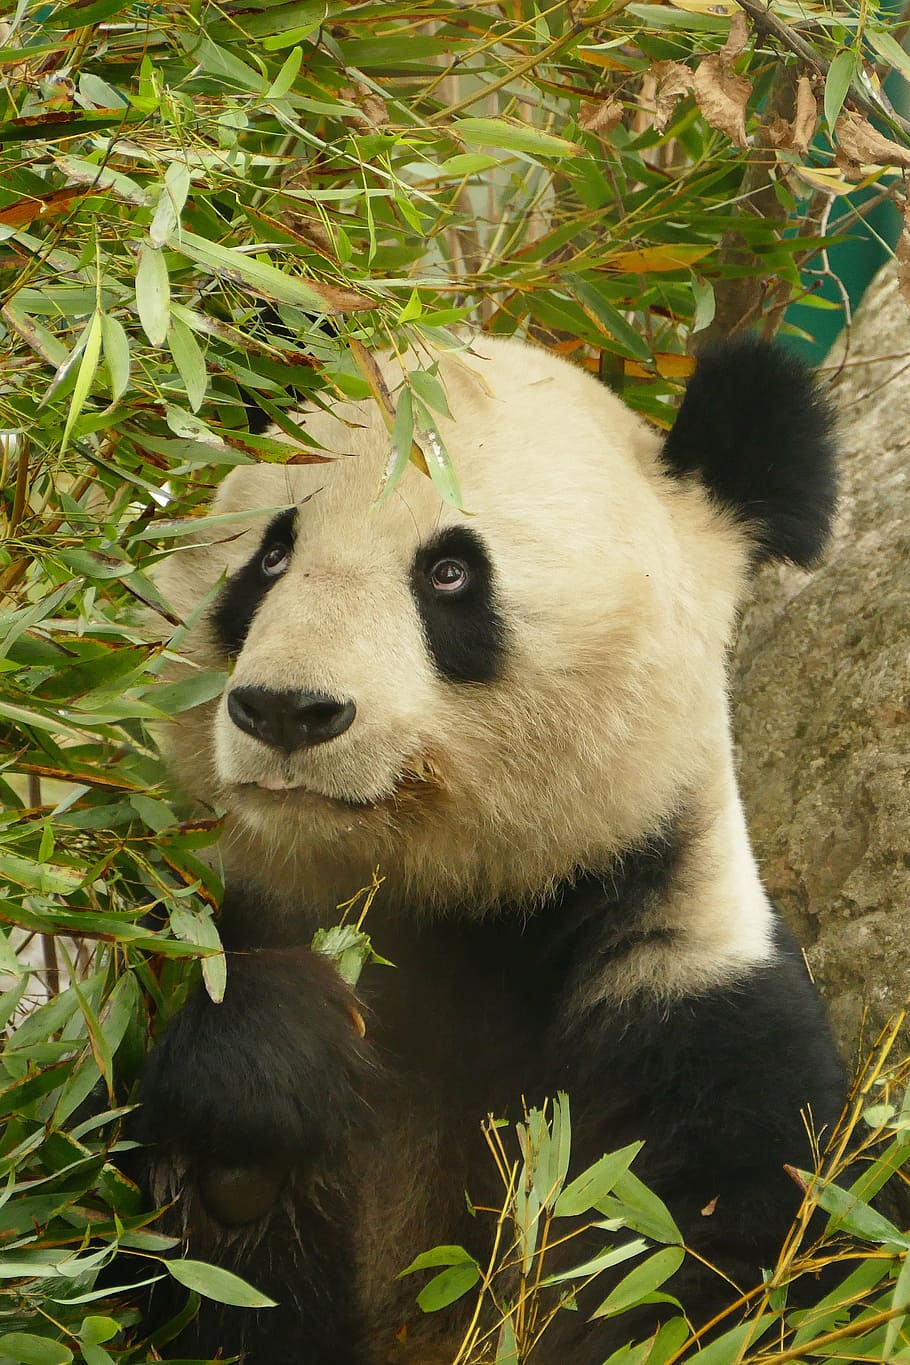 putih, hitam, panda, rumput bambu, hewan, beruang, mamalia, kebun binatang, bulu, imut